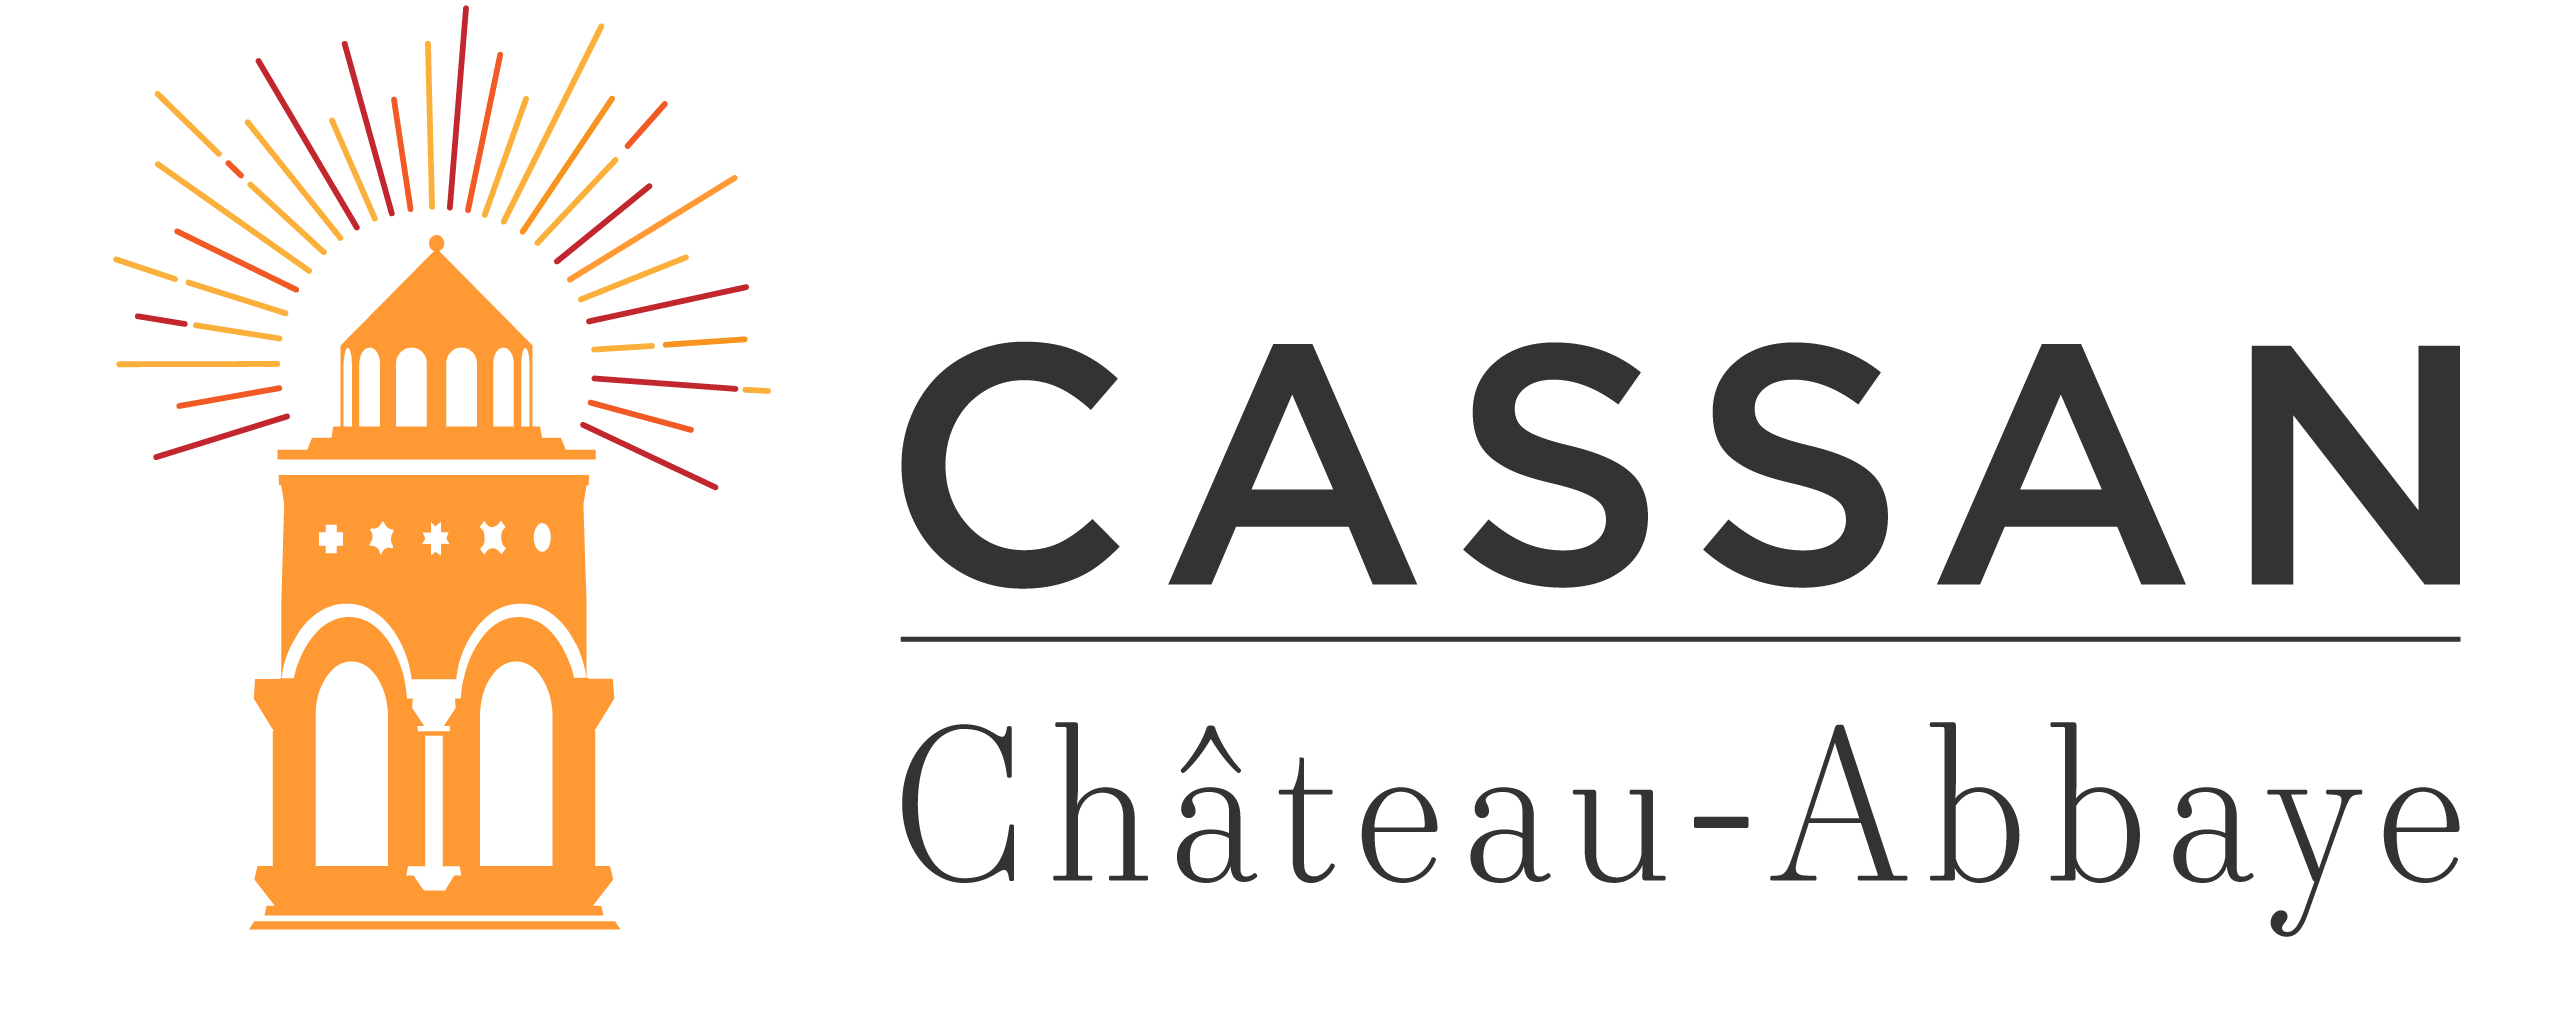 Château Abbaye de Cassan